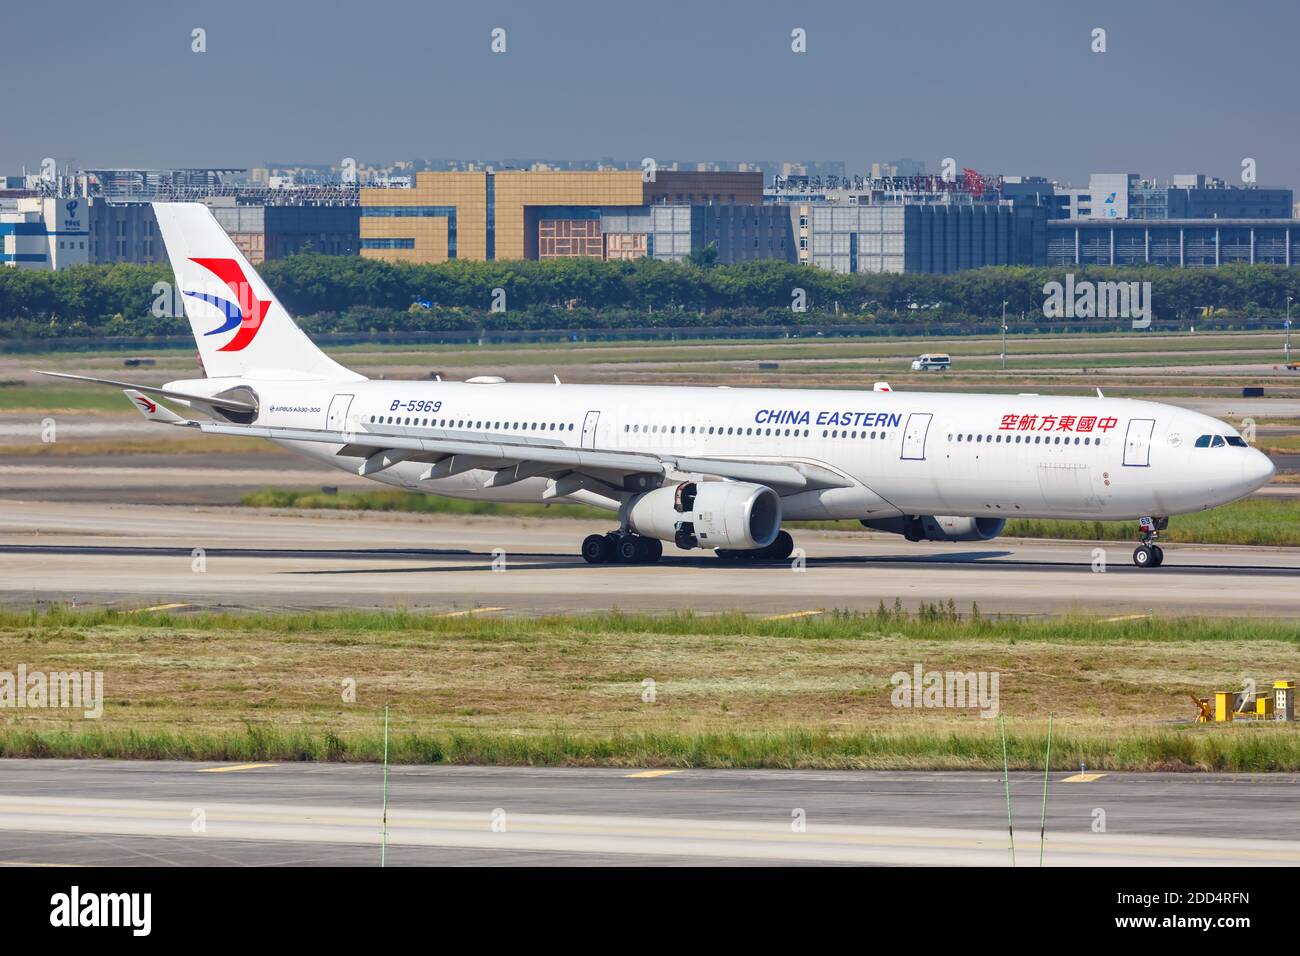 Guangzhou, Chine - 24 septembre 2019 : avion Airbus A330-300 de China Eastern Airlines à l'aéroport de Guangzhou Baiyun (CAN) en Chine. Banque D'Images